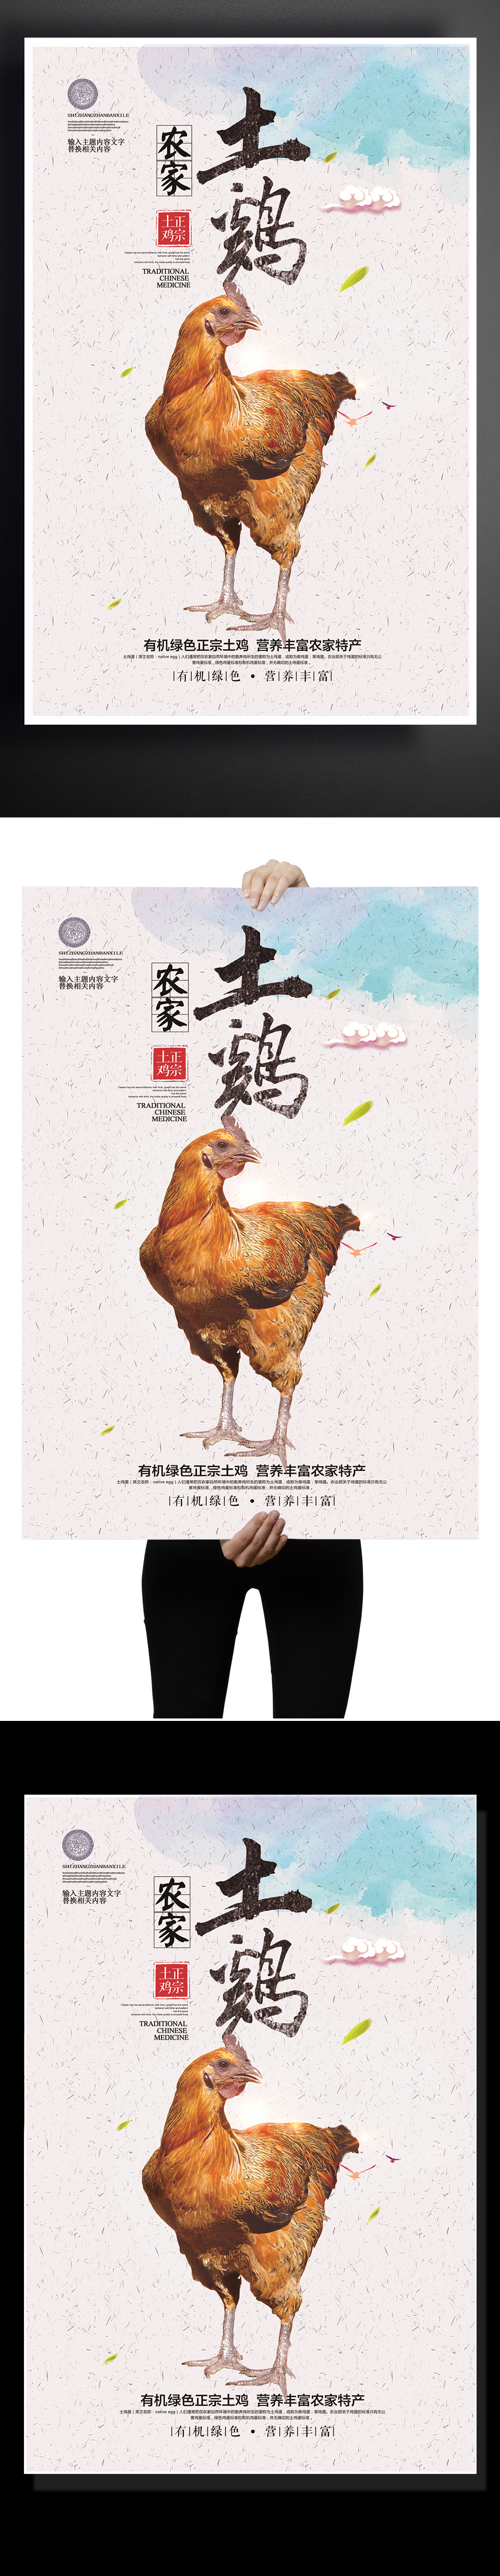 创意中国风农家土鸡宣传促销海报图片